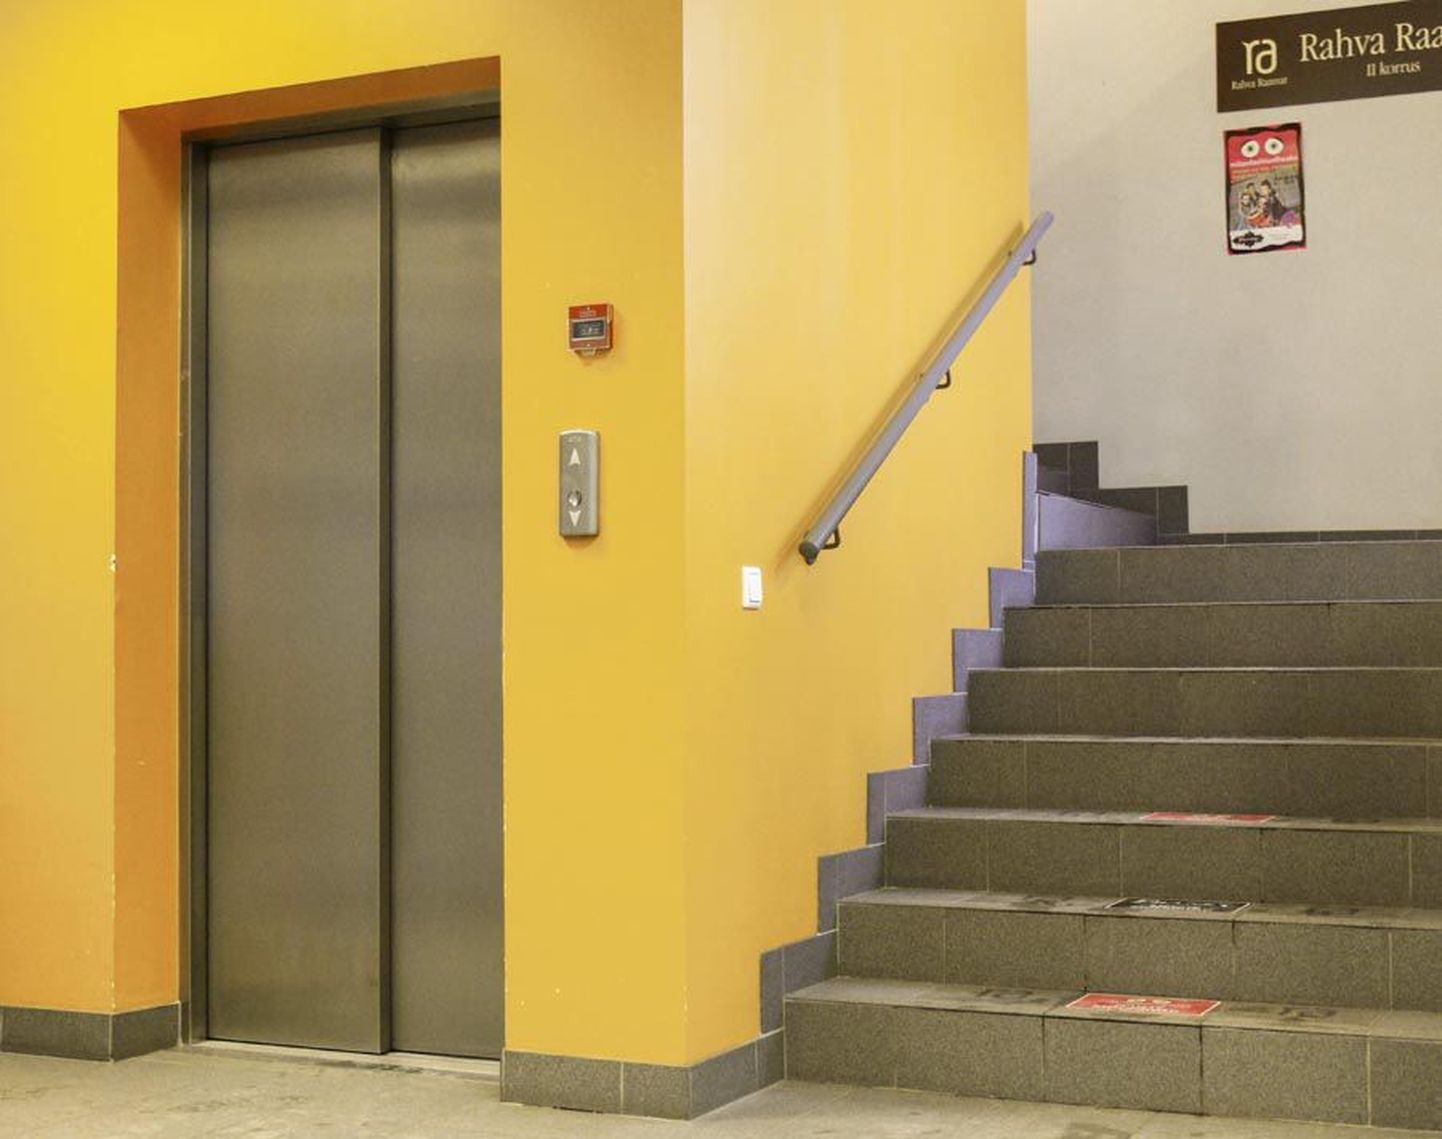 Kui otsustate trepi asemel lifti kasuks, siis tasuks enne sinna sisenemist endale selgeks teha, mis on hoone aadress.